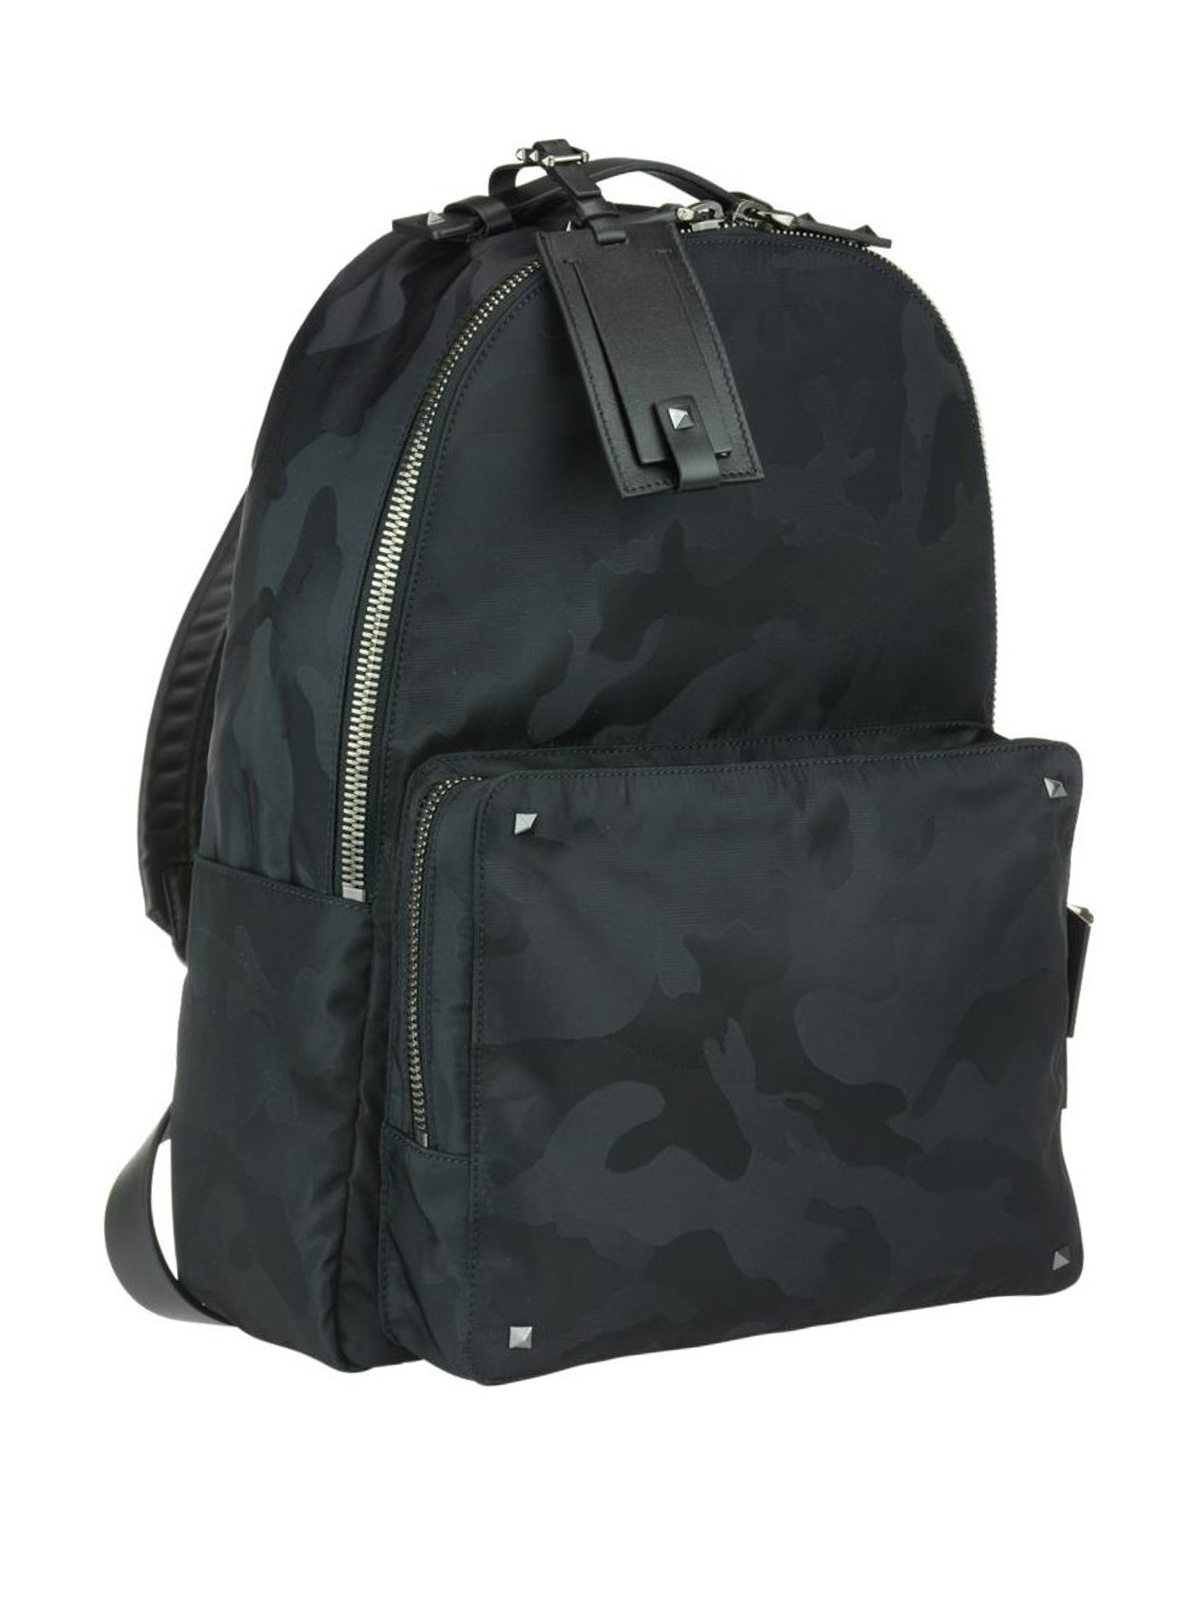 Backpacks Valentino Garavani - Camu fabric trekking backpack -  PY2B0645NAI0NO